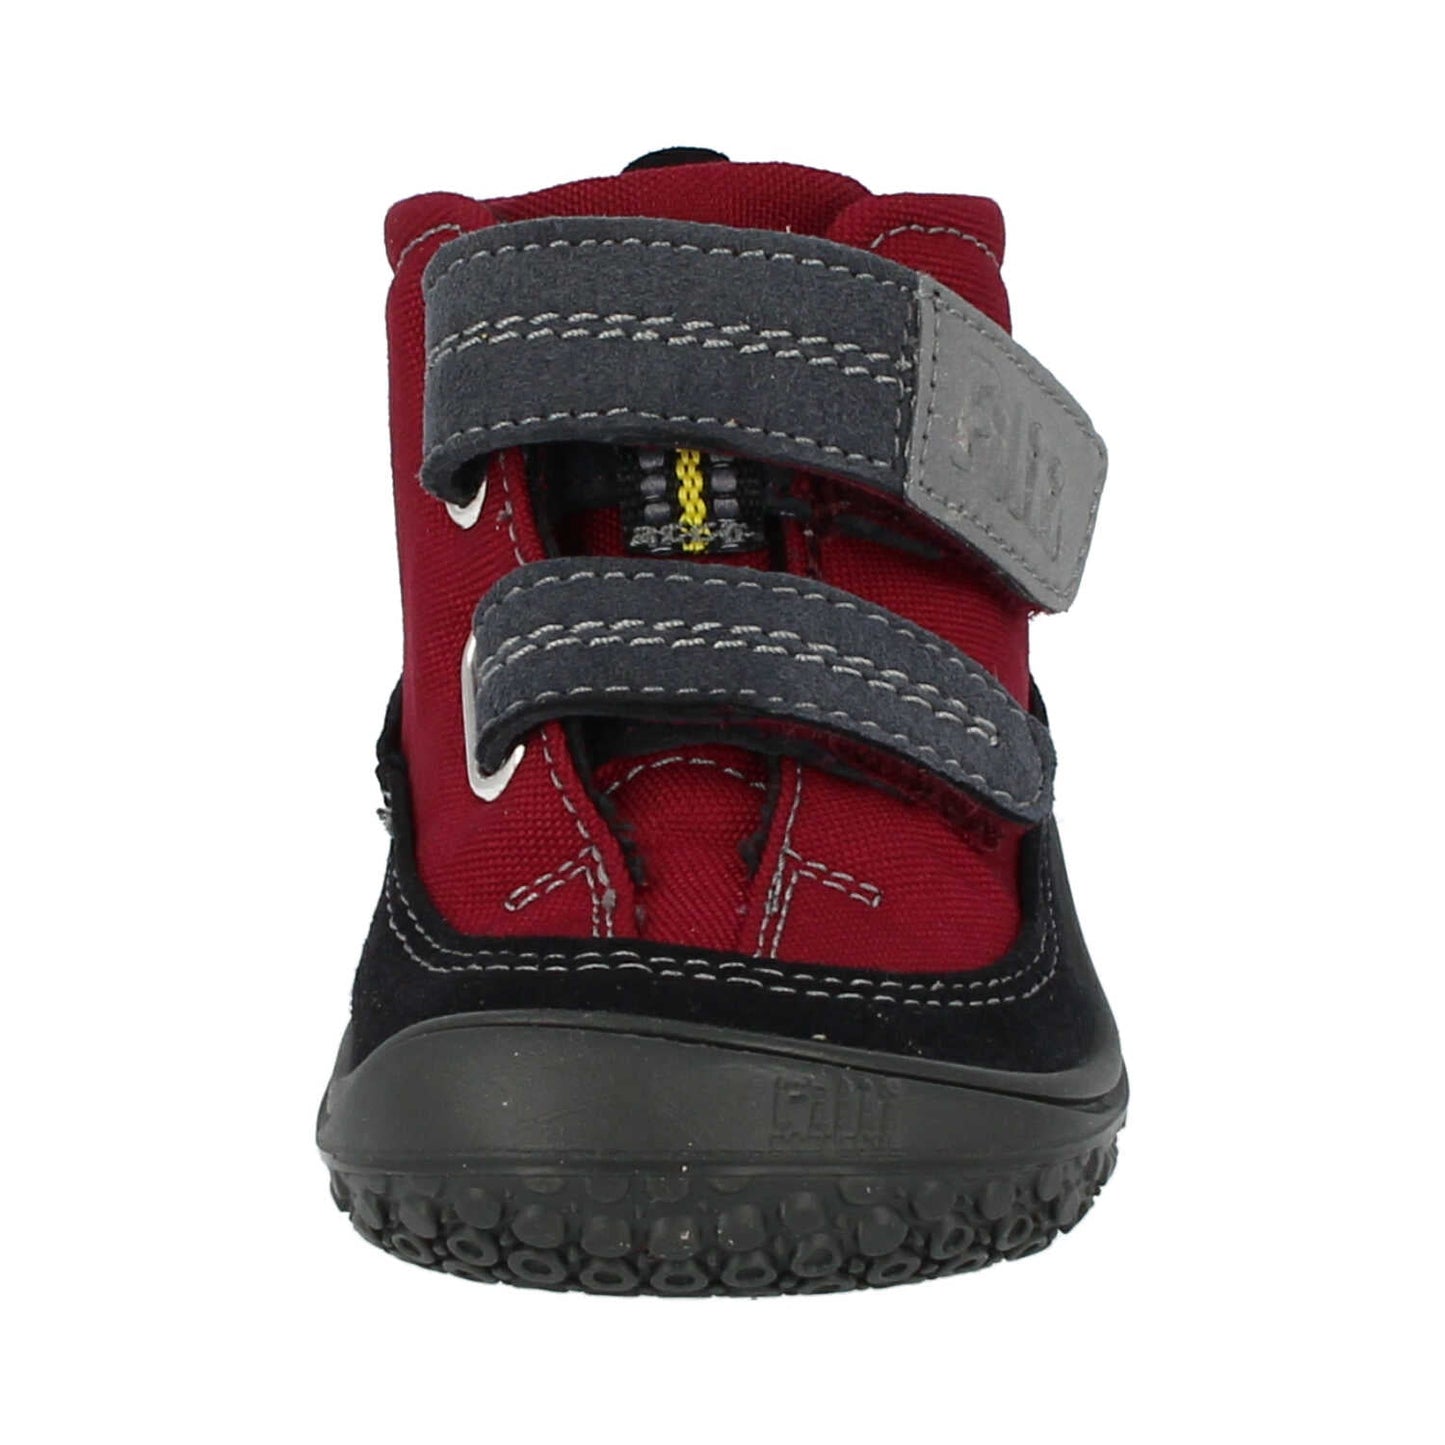 Filii Viper Velcro "Medium" barfods high sneakers til børn i farven berry, forfra